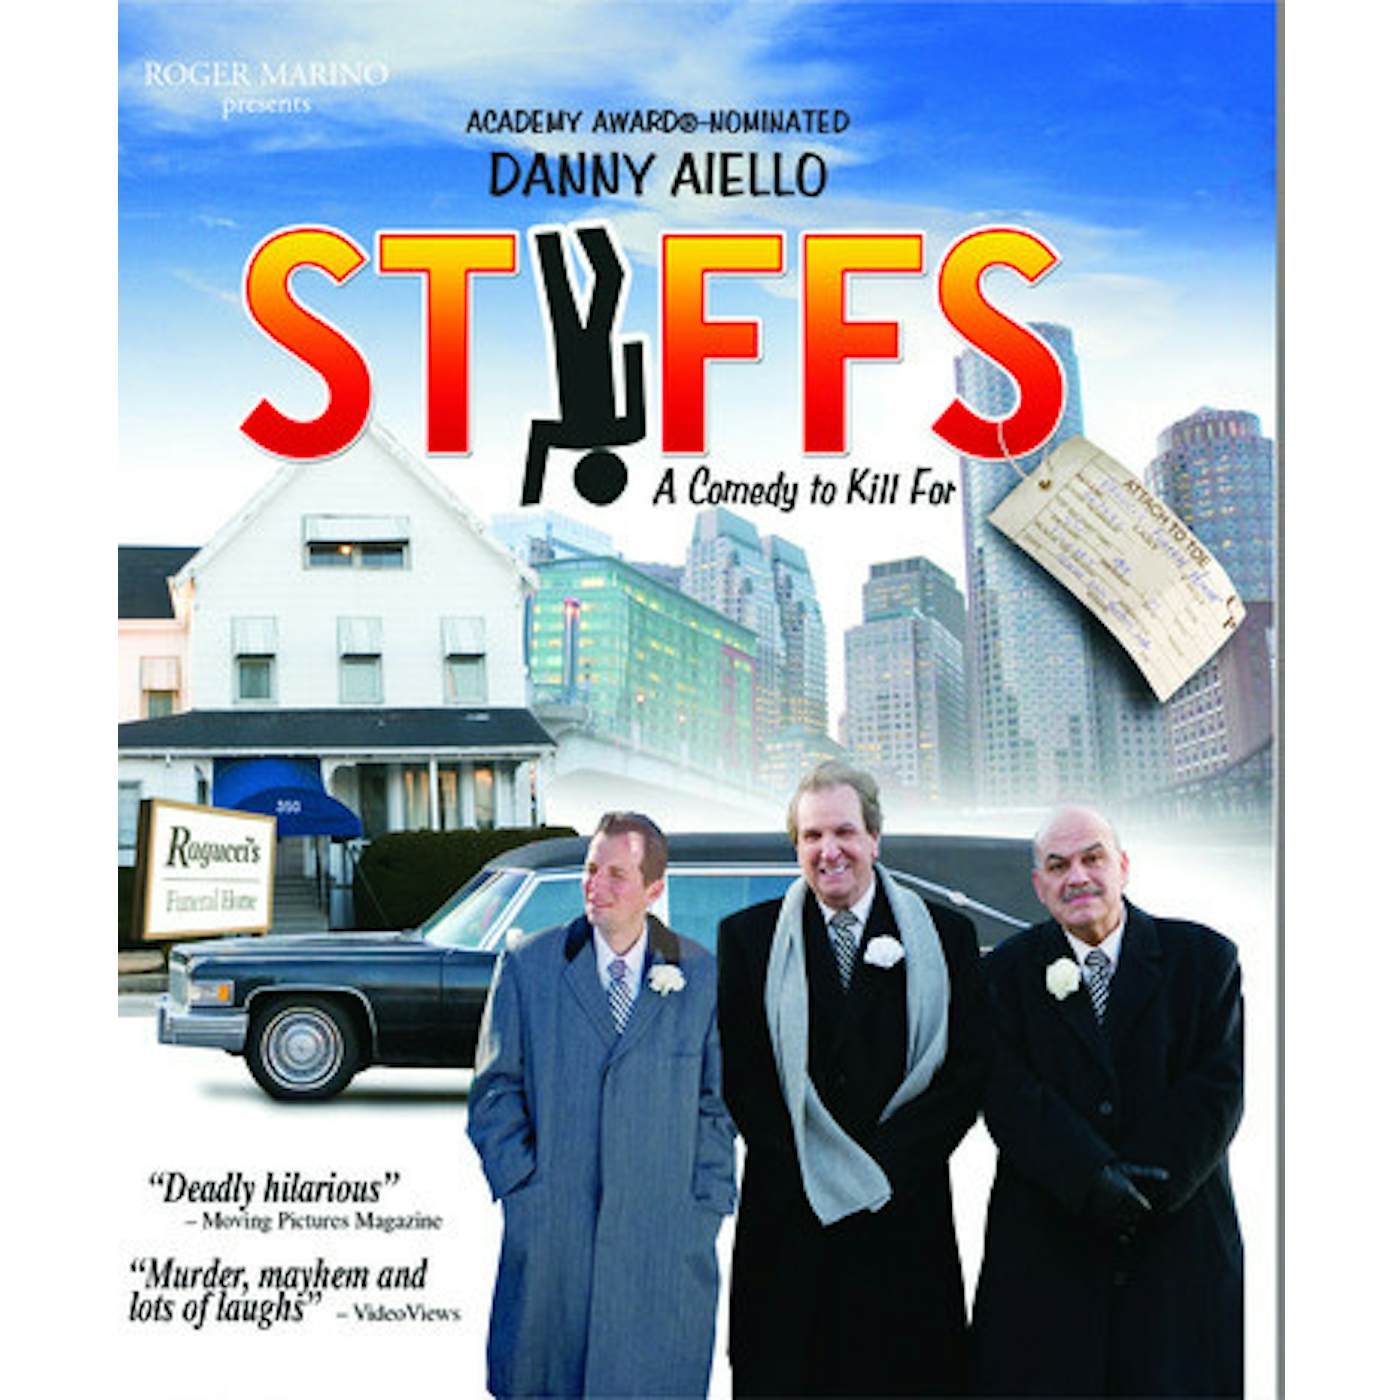 The Stiffs Blu-ray